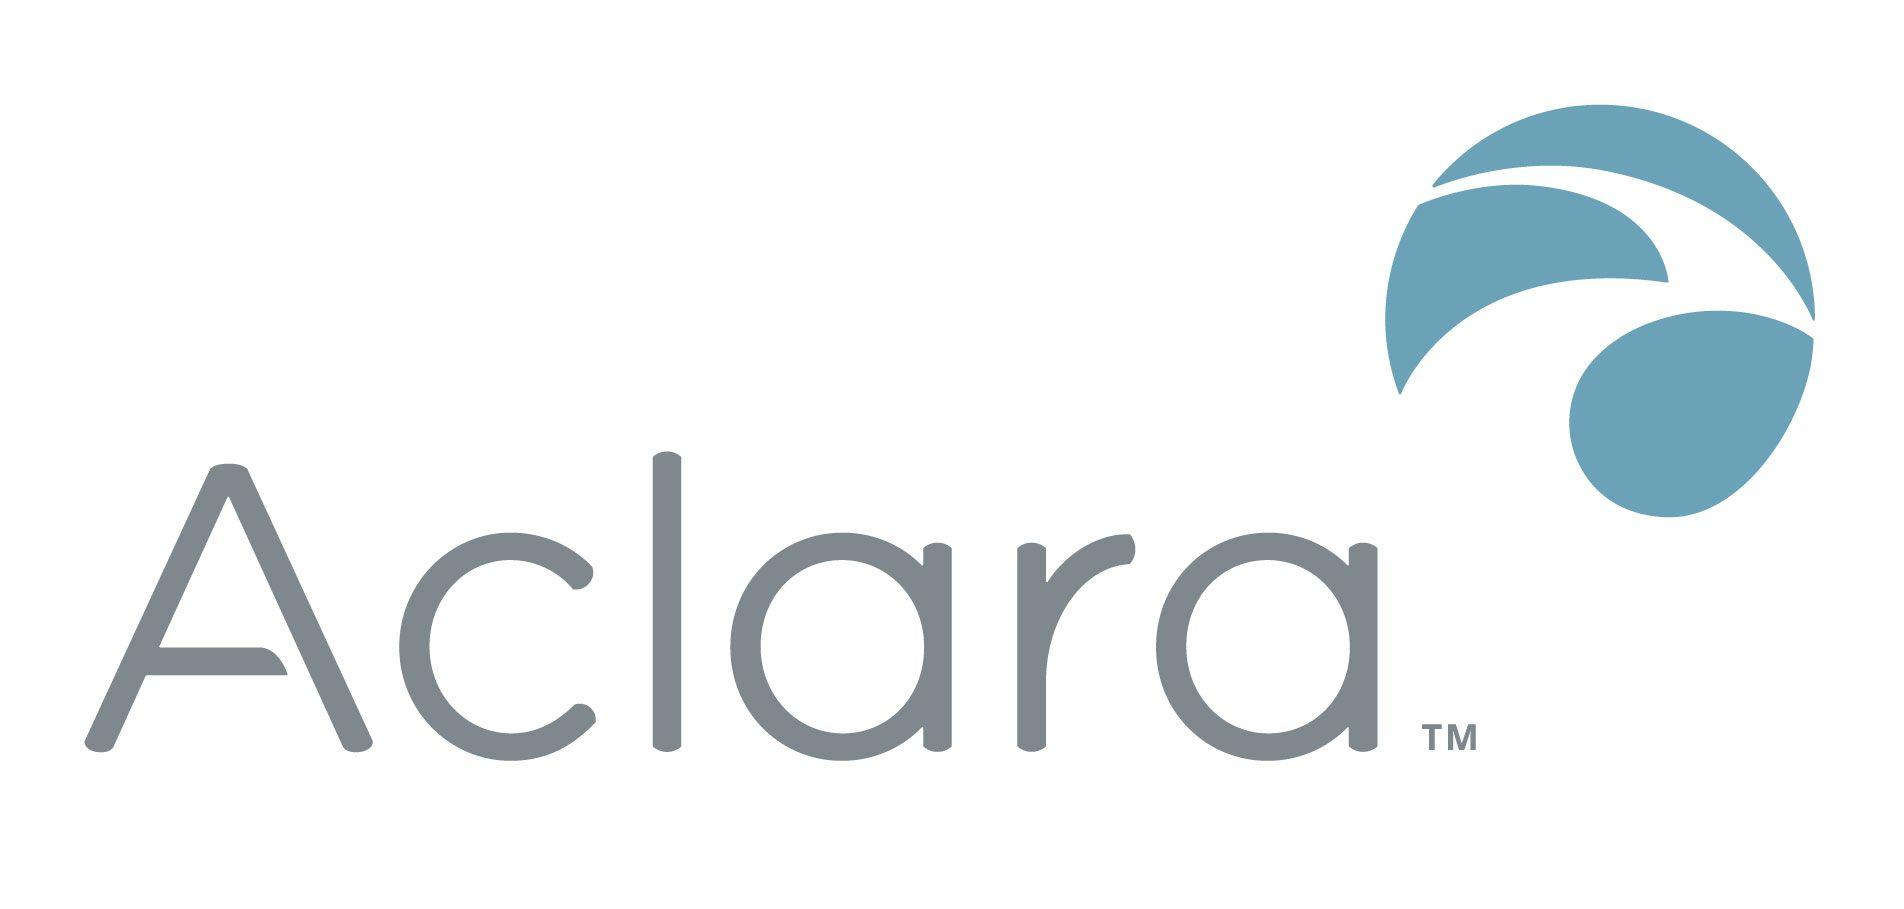 Aclara Logo - Jobs at Aclara